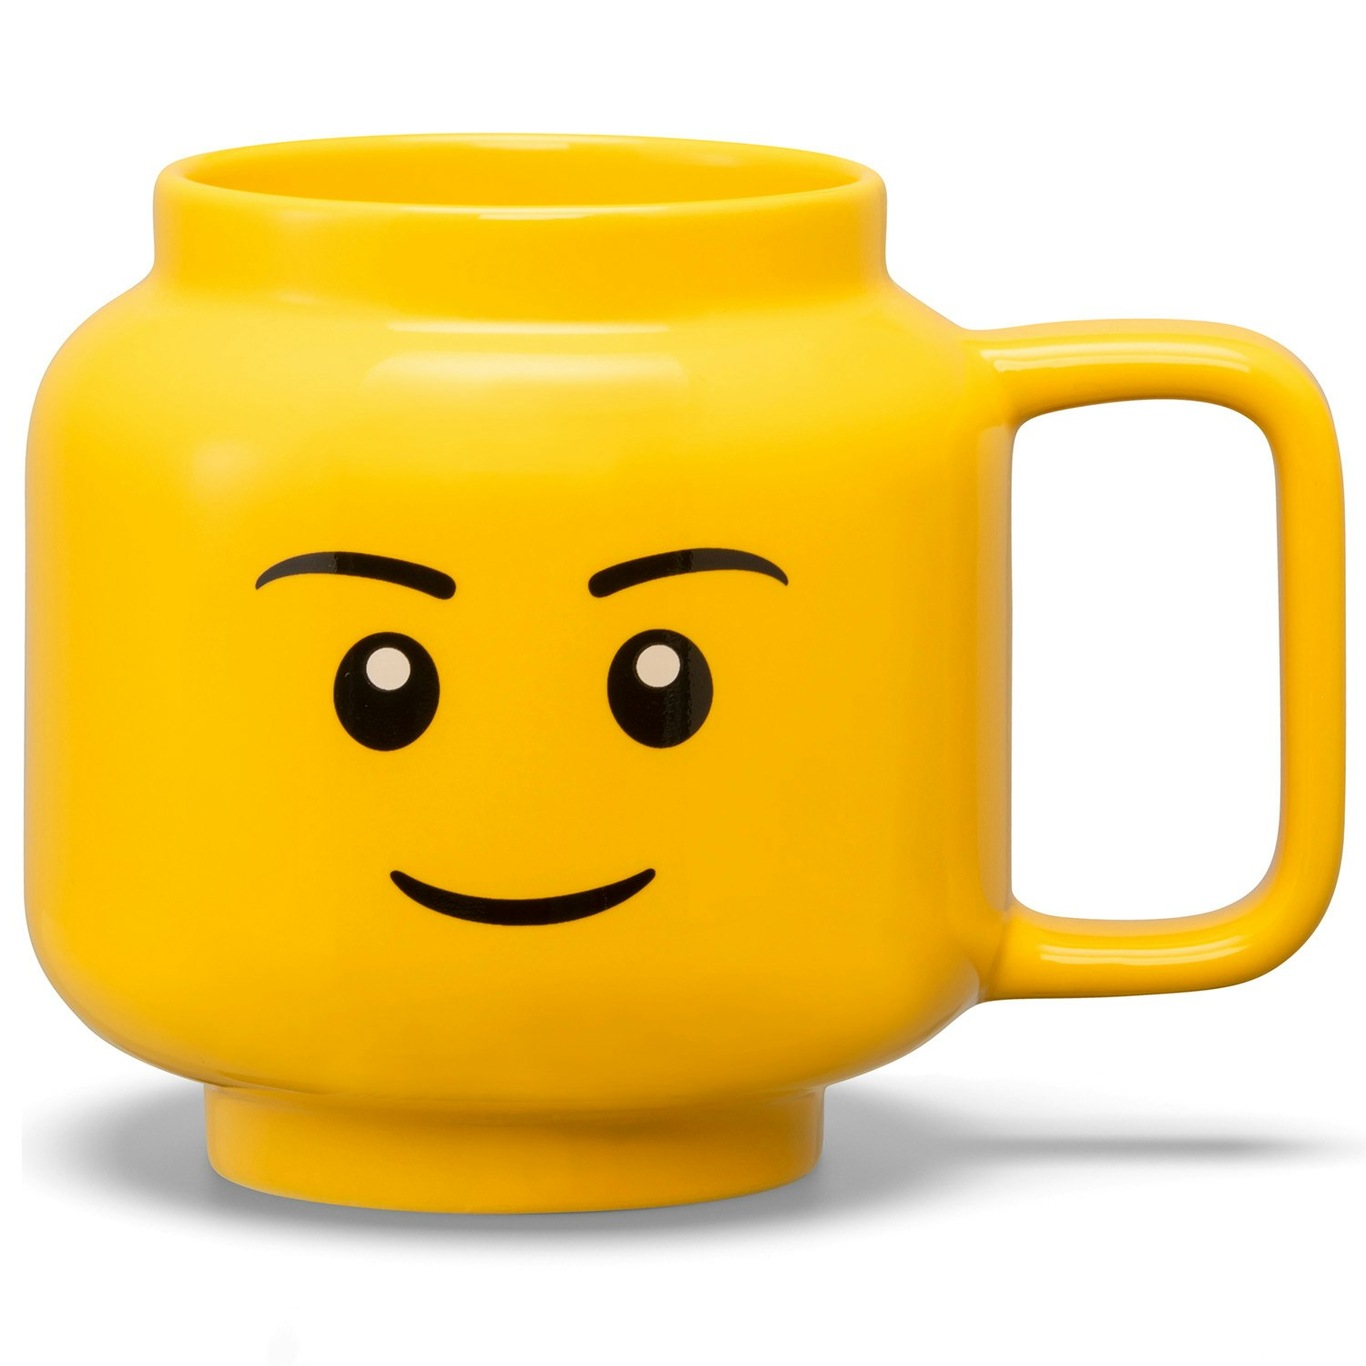 LEGO Ceramic Mug Small Boy Krus Gult, L